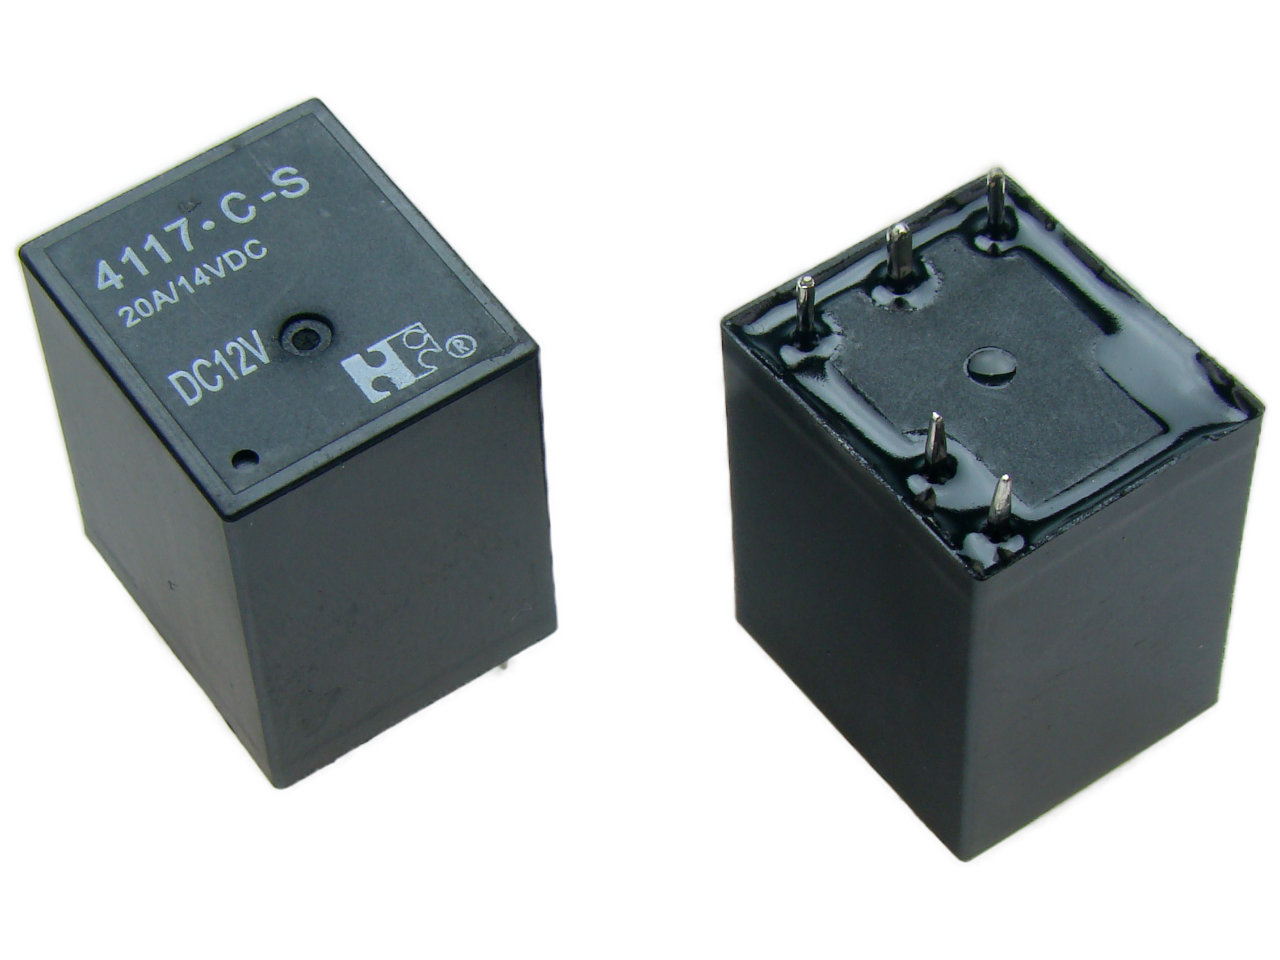 Przekaźnik 4117CS20-12V 12VDC;20A; 1 st. przełączny;do druku;Forward